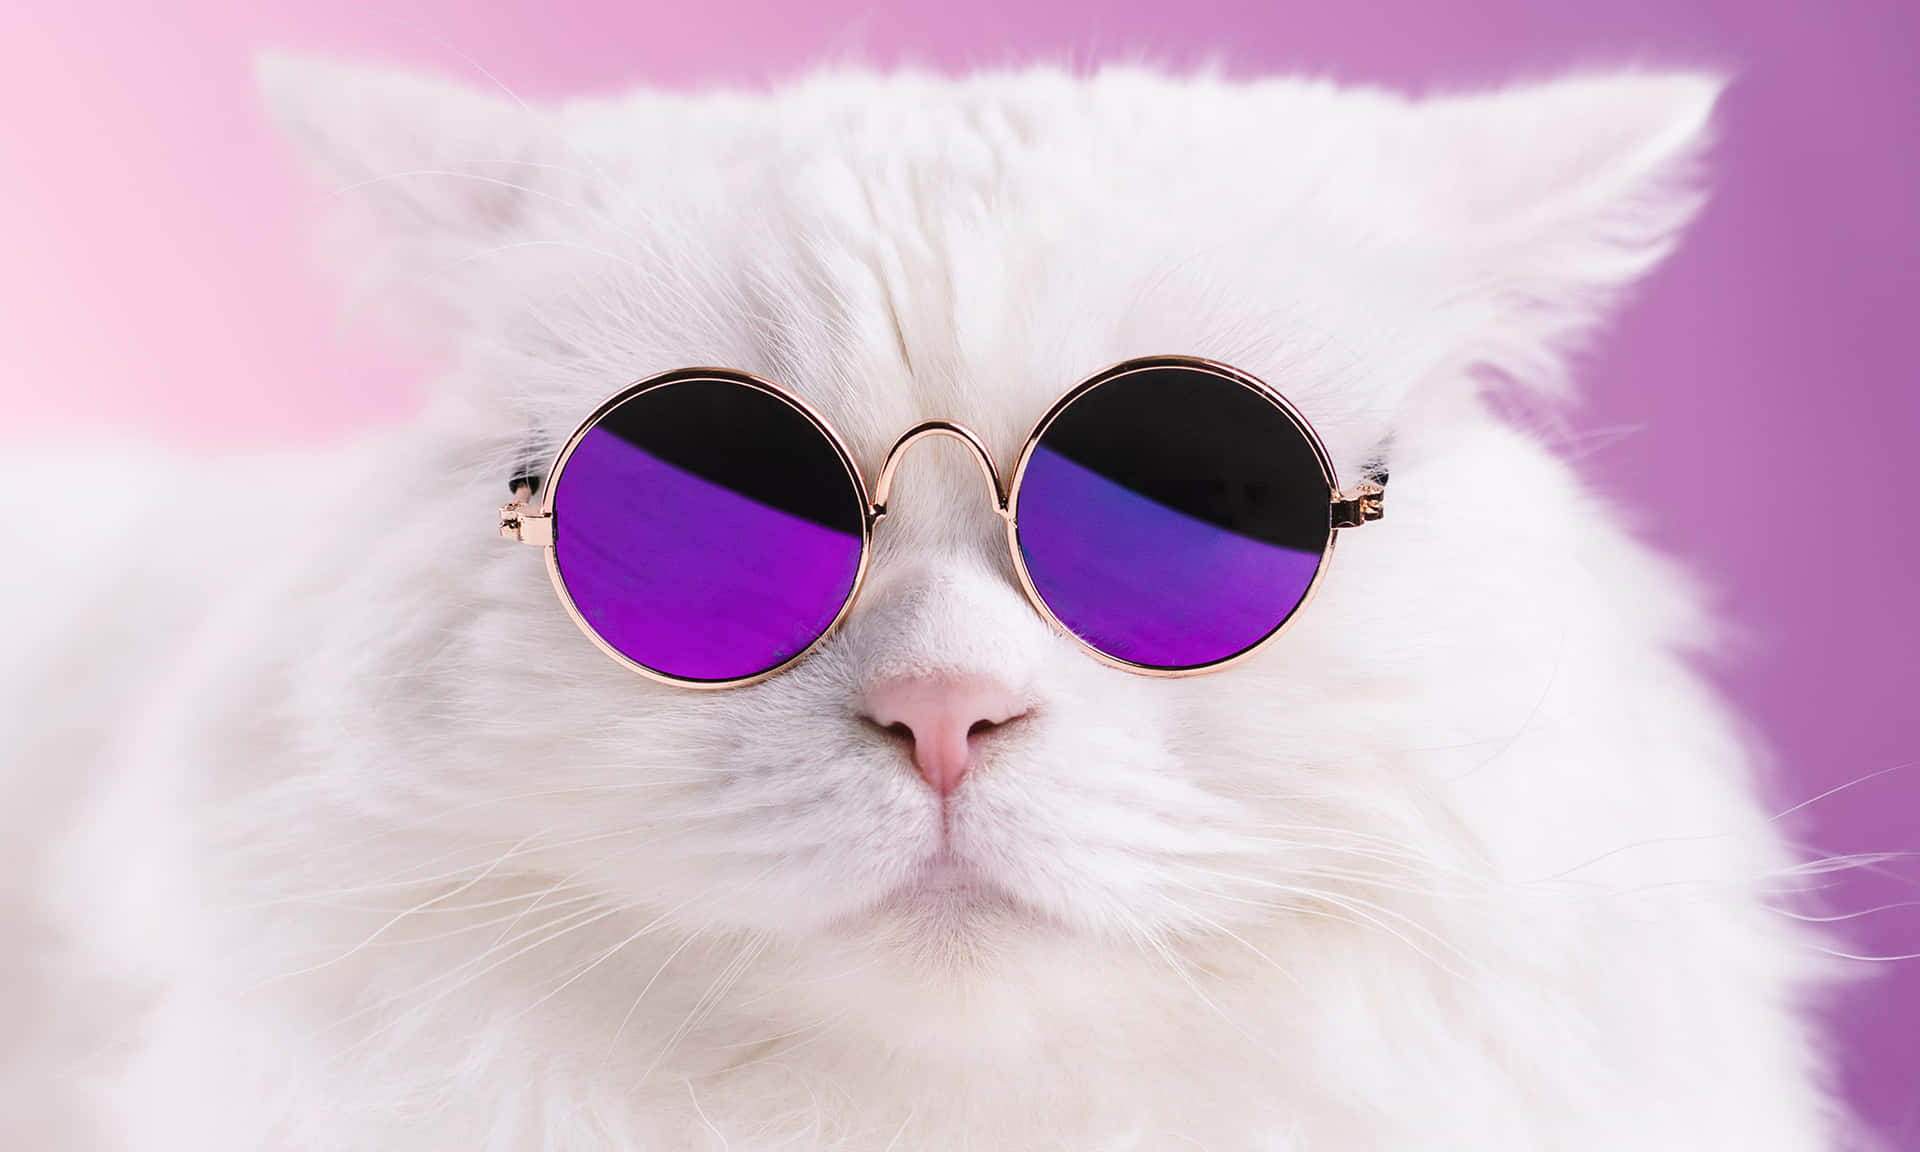 Roligakattmemes - Bild På Vit Katt Med Lila Solglasögon